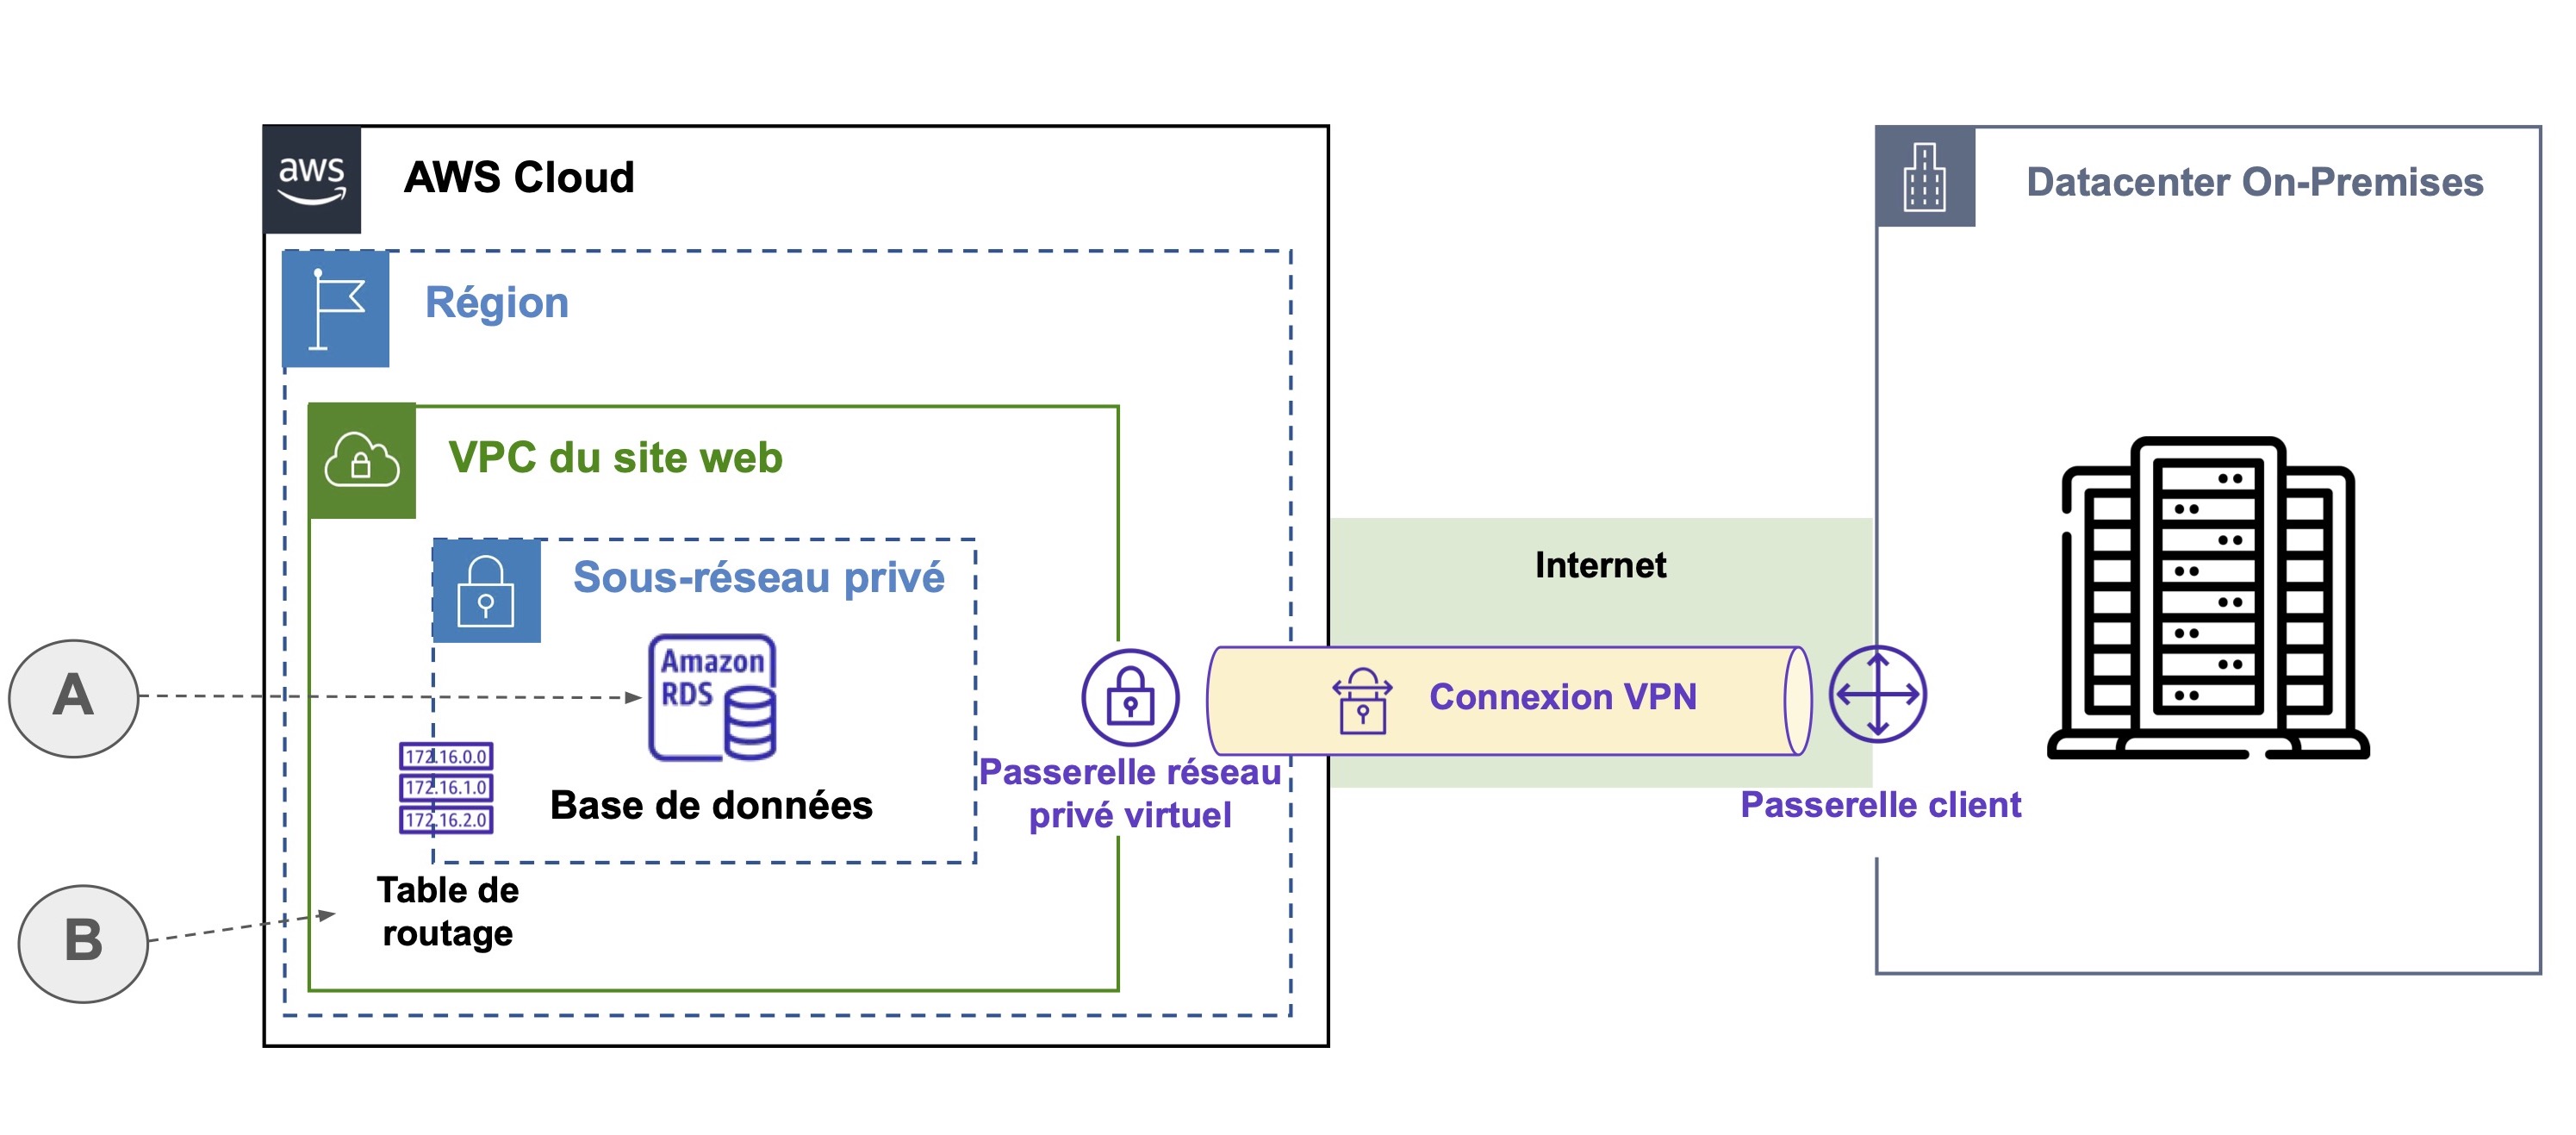 Mème schèma que la précédente, mais avec on voit une table de routage (B) à coté de la base de données (A), ainsi qu'une passerelle réseau privé vitrtuel et passerelle client